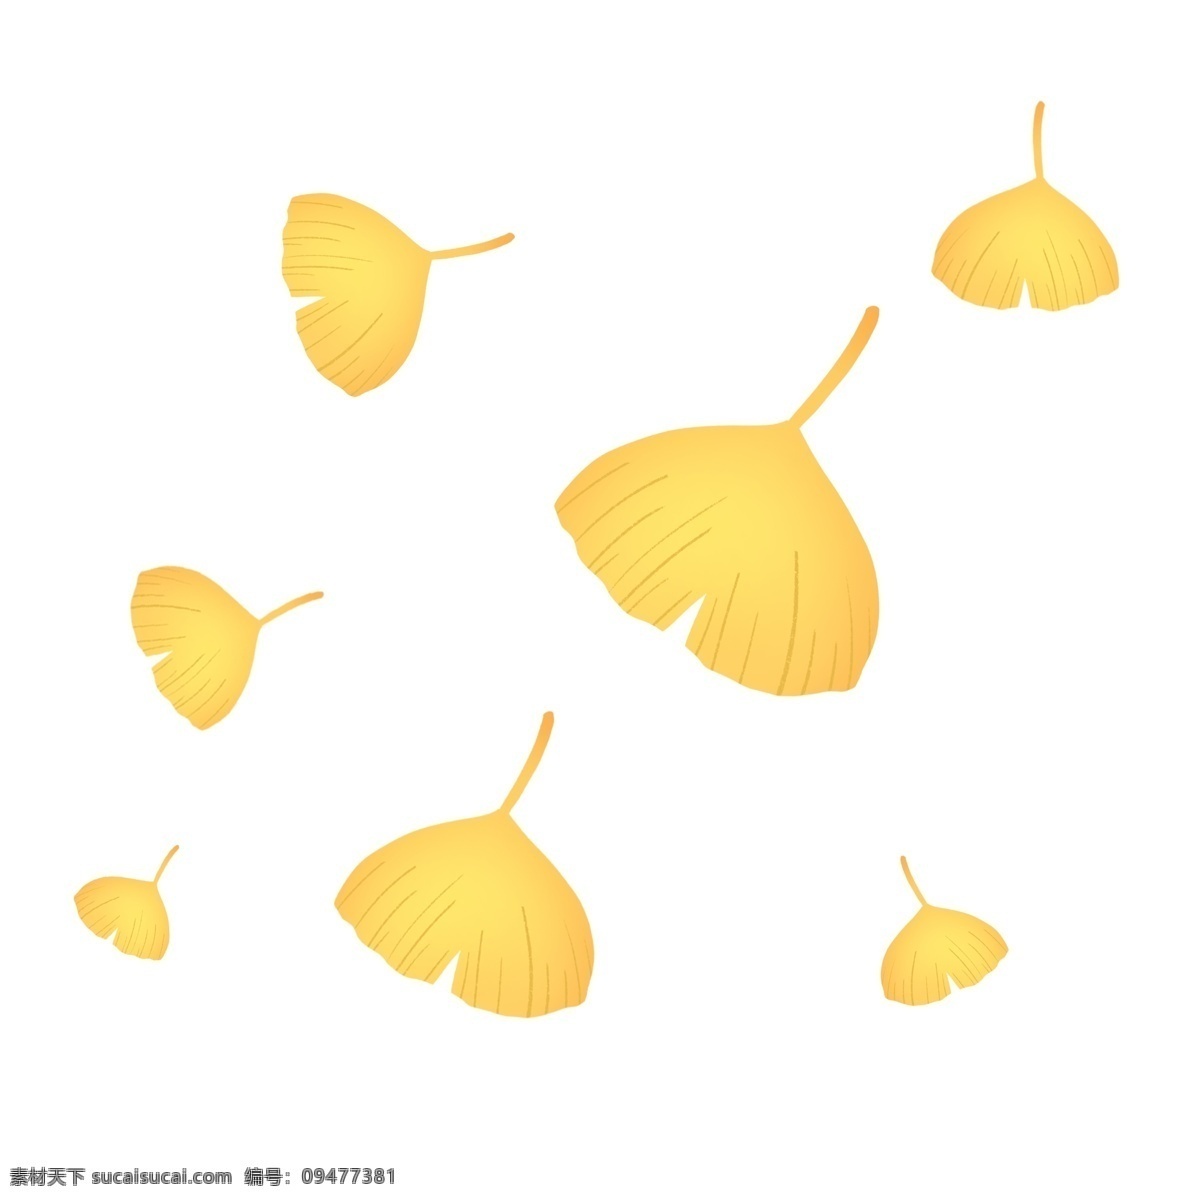 金色 秋天 浪漫 飘舞 银杏叶 叶子 树叶 金色叶子 黄色 黄色叶子 秋季 落叶 飘落